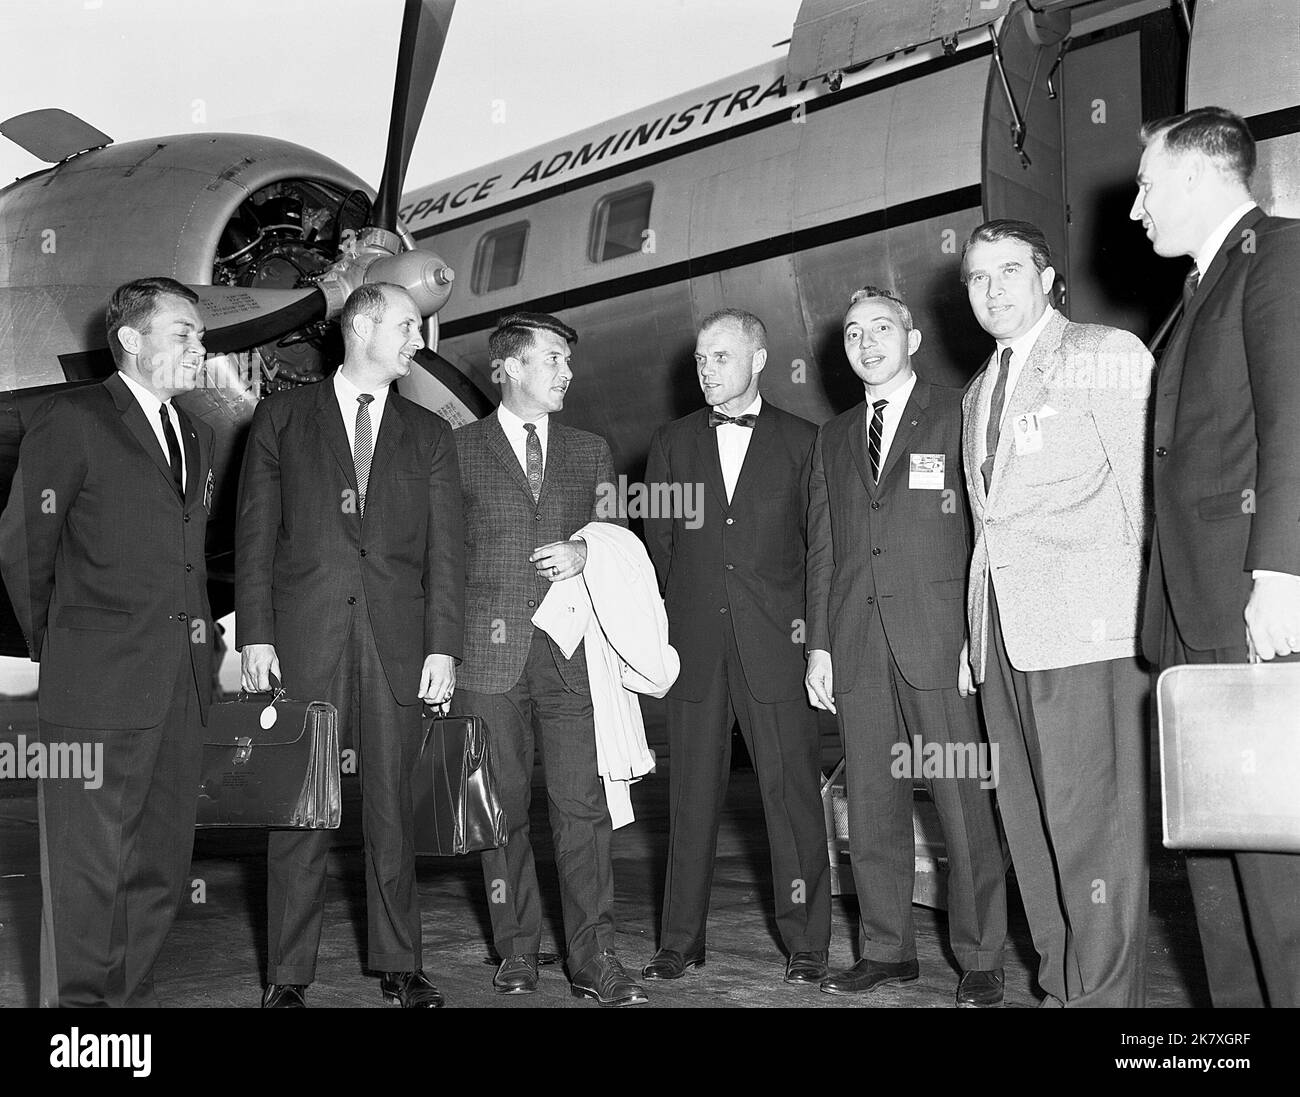 ASTRONAUTI CON DR. VON BRAUN E DR. HOLMES questa settimana nel 1962, il direttore del Centro spaziale di volo della NASA Marshall, Dr. Wernher von Braun, ha incontrato cinque astronauti e Brainerd Holmes, amministratore associato della NASA per il volo spaziale con equipaggio, a Marshall. Da sinistra si trovano Elliot See, Tom Stafford, Wally Schirra, John Glenn, Holmes, Von Braun e Jim Lovell. I funzionari e gli astronauti della NASA si recavano spesso a Marshall per incontrare von Braun. Foto Stock